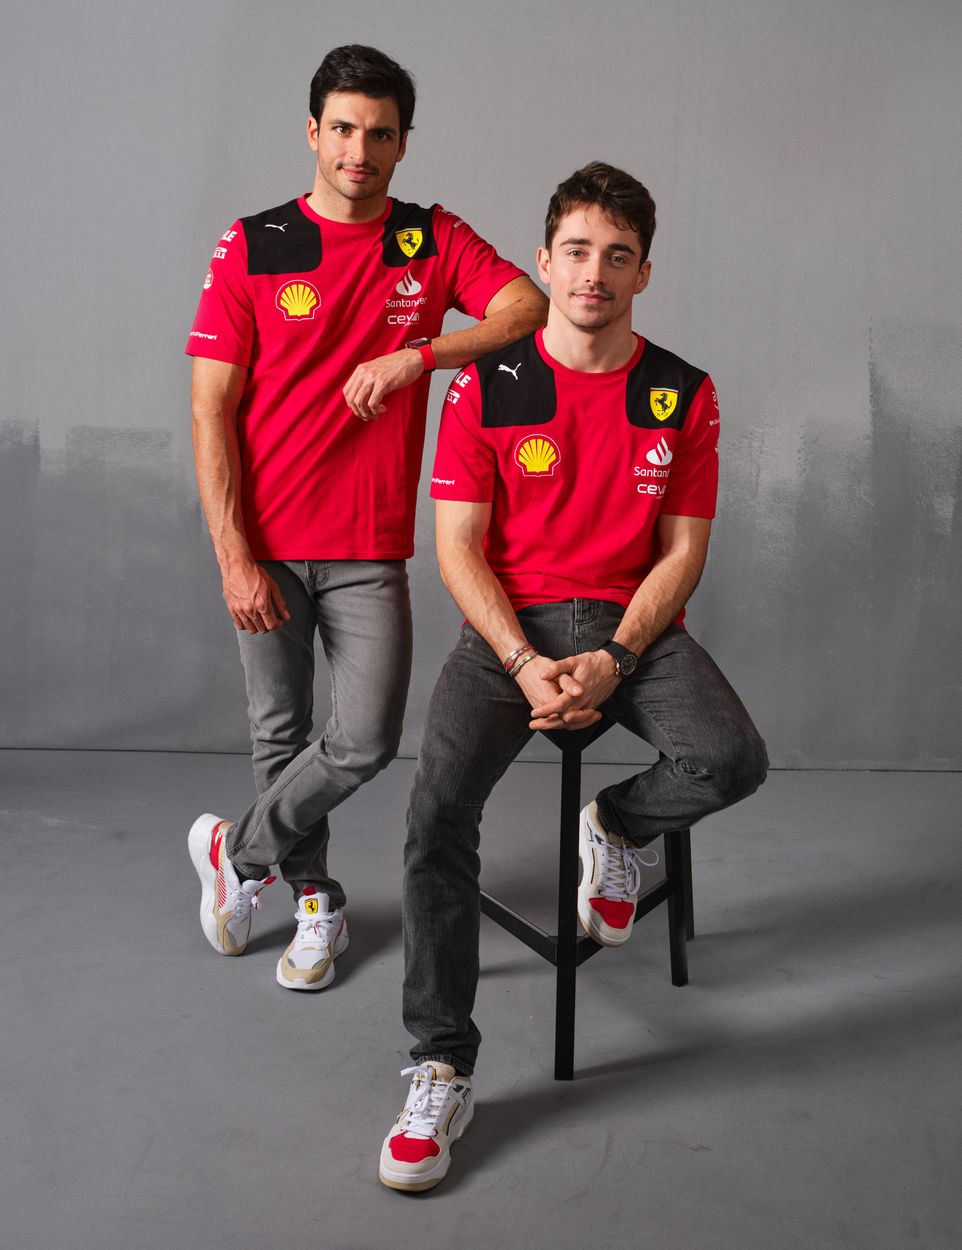 F1 | Ferrari SF-23, le immagini della nuova Rossa e del Team [Gallery]